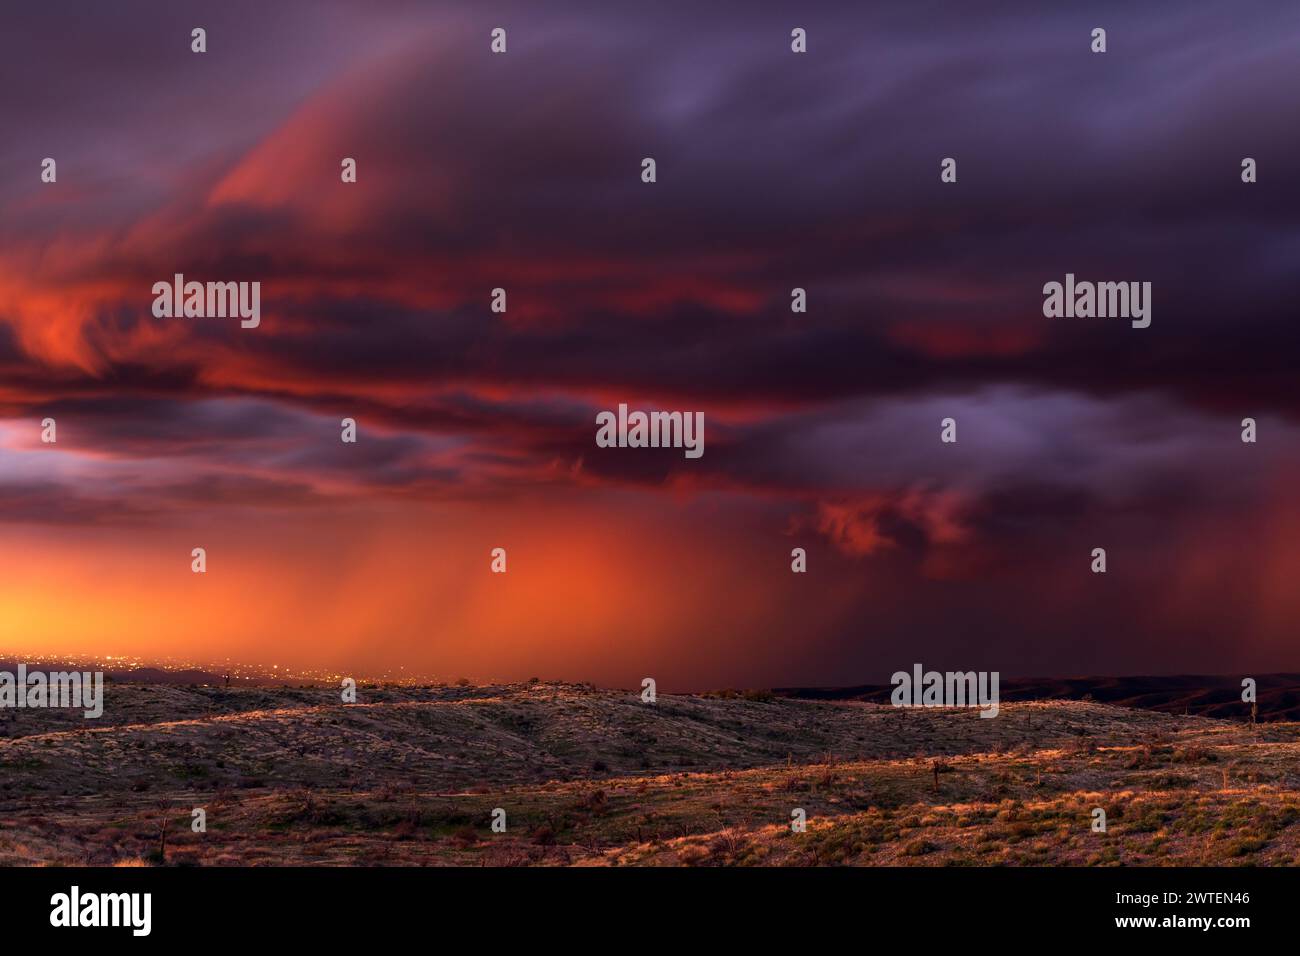 Stürmischer Sonnenuntergangshimmel mit dunklen, dramatischen Wolken und Regen in der Wüste nahe Rio Verde, Arizona Stockfoto